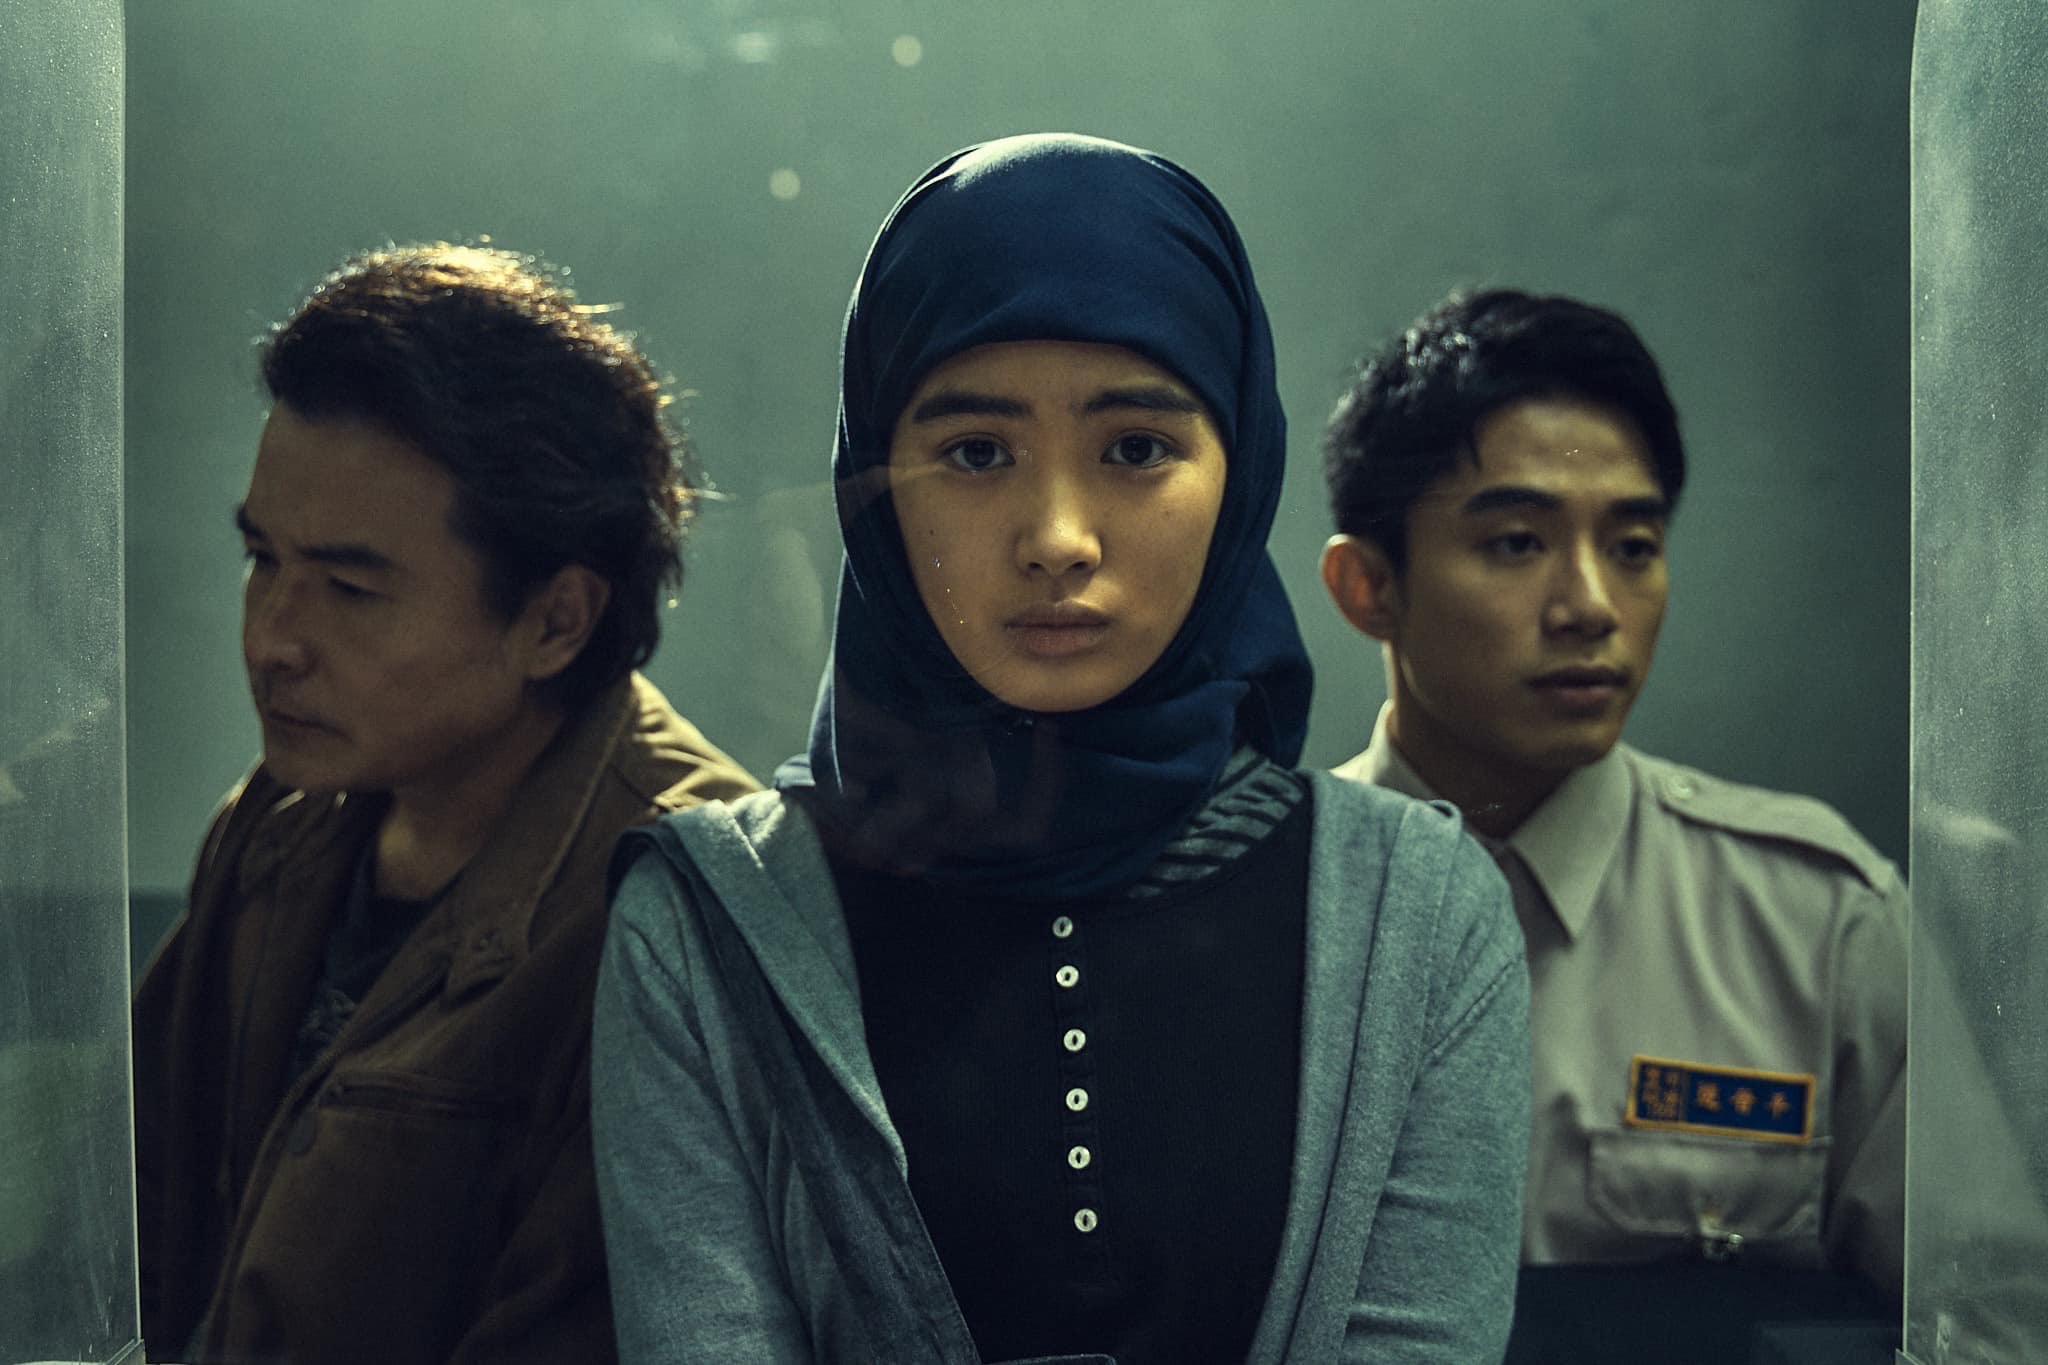 Aktris Regina Lei berperan sebagai pekerja imigran Indonesia yang terlibat dalam kasus di serial tersebut.  (Sumber foto : Facebook Regina)